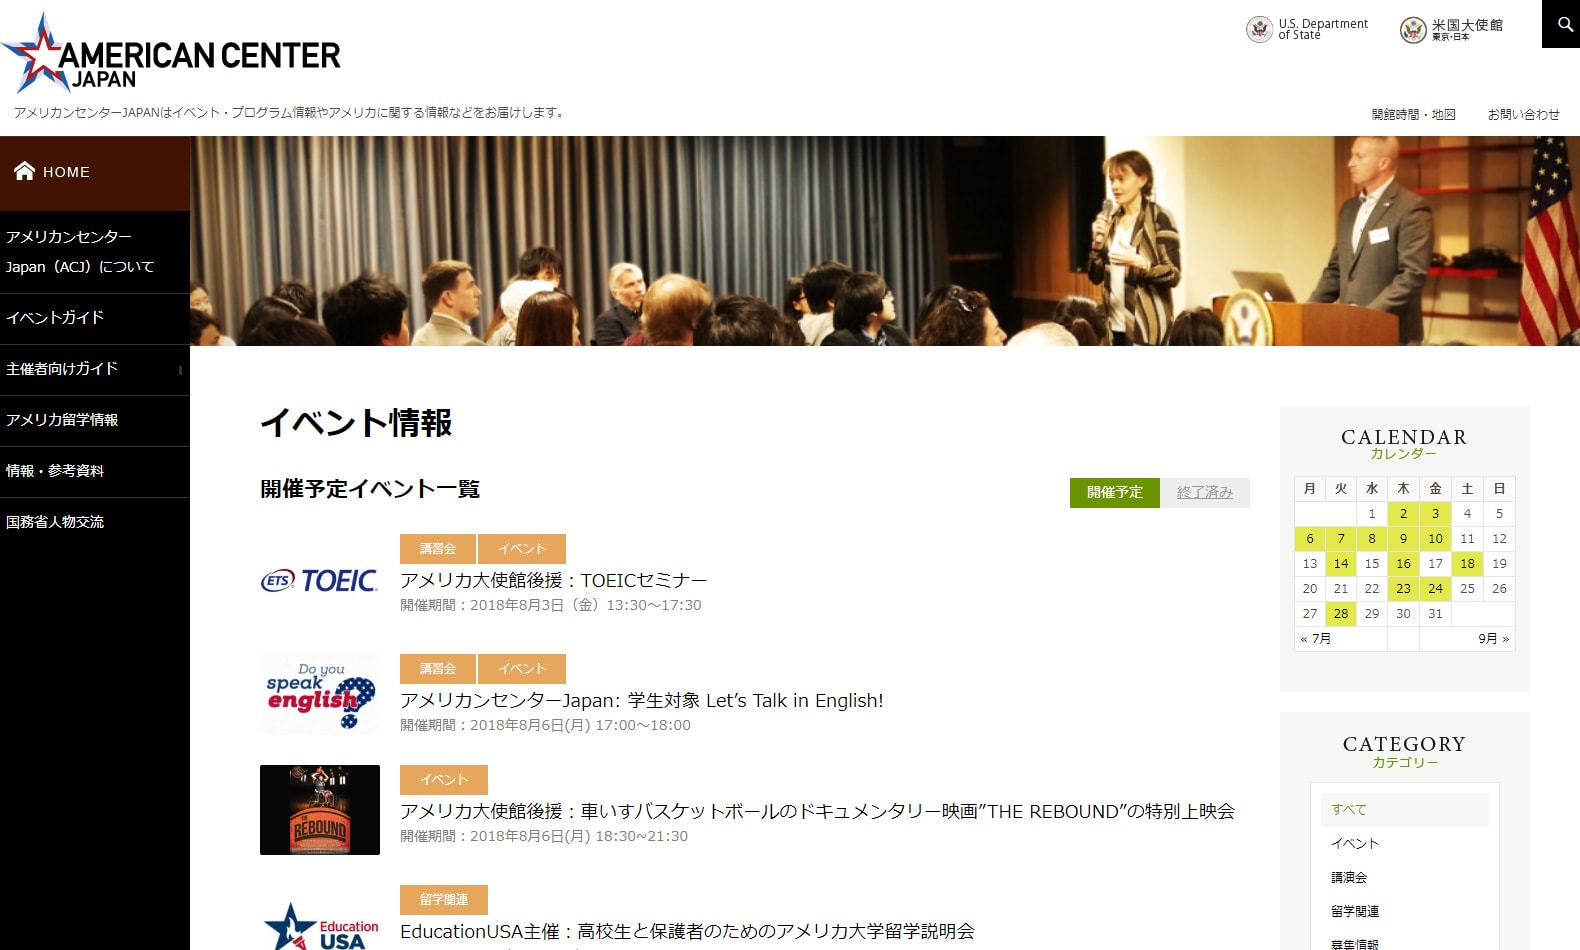 「アメリカンセンタージャパン」様サイトのページ画像3